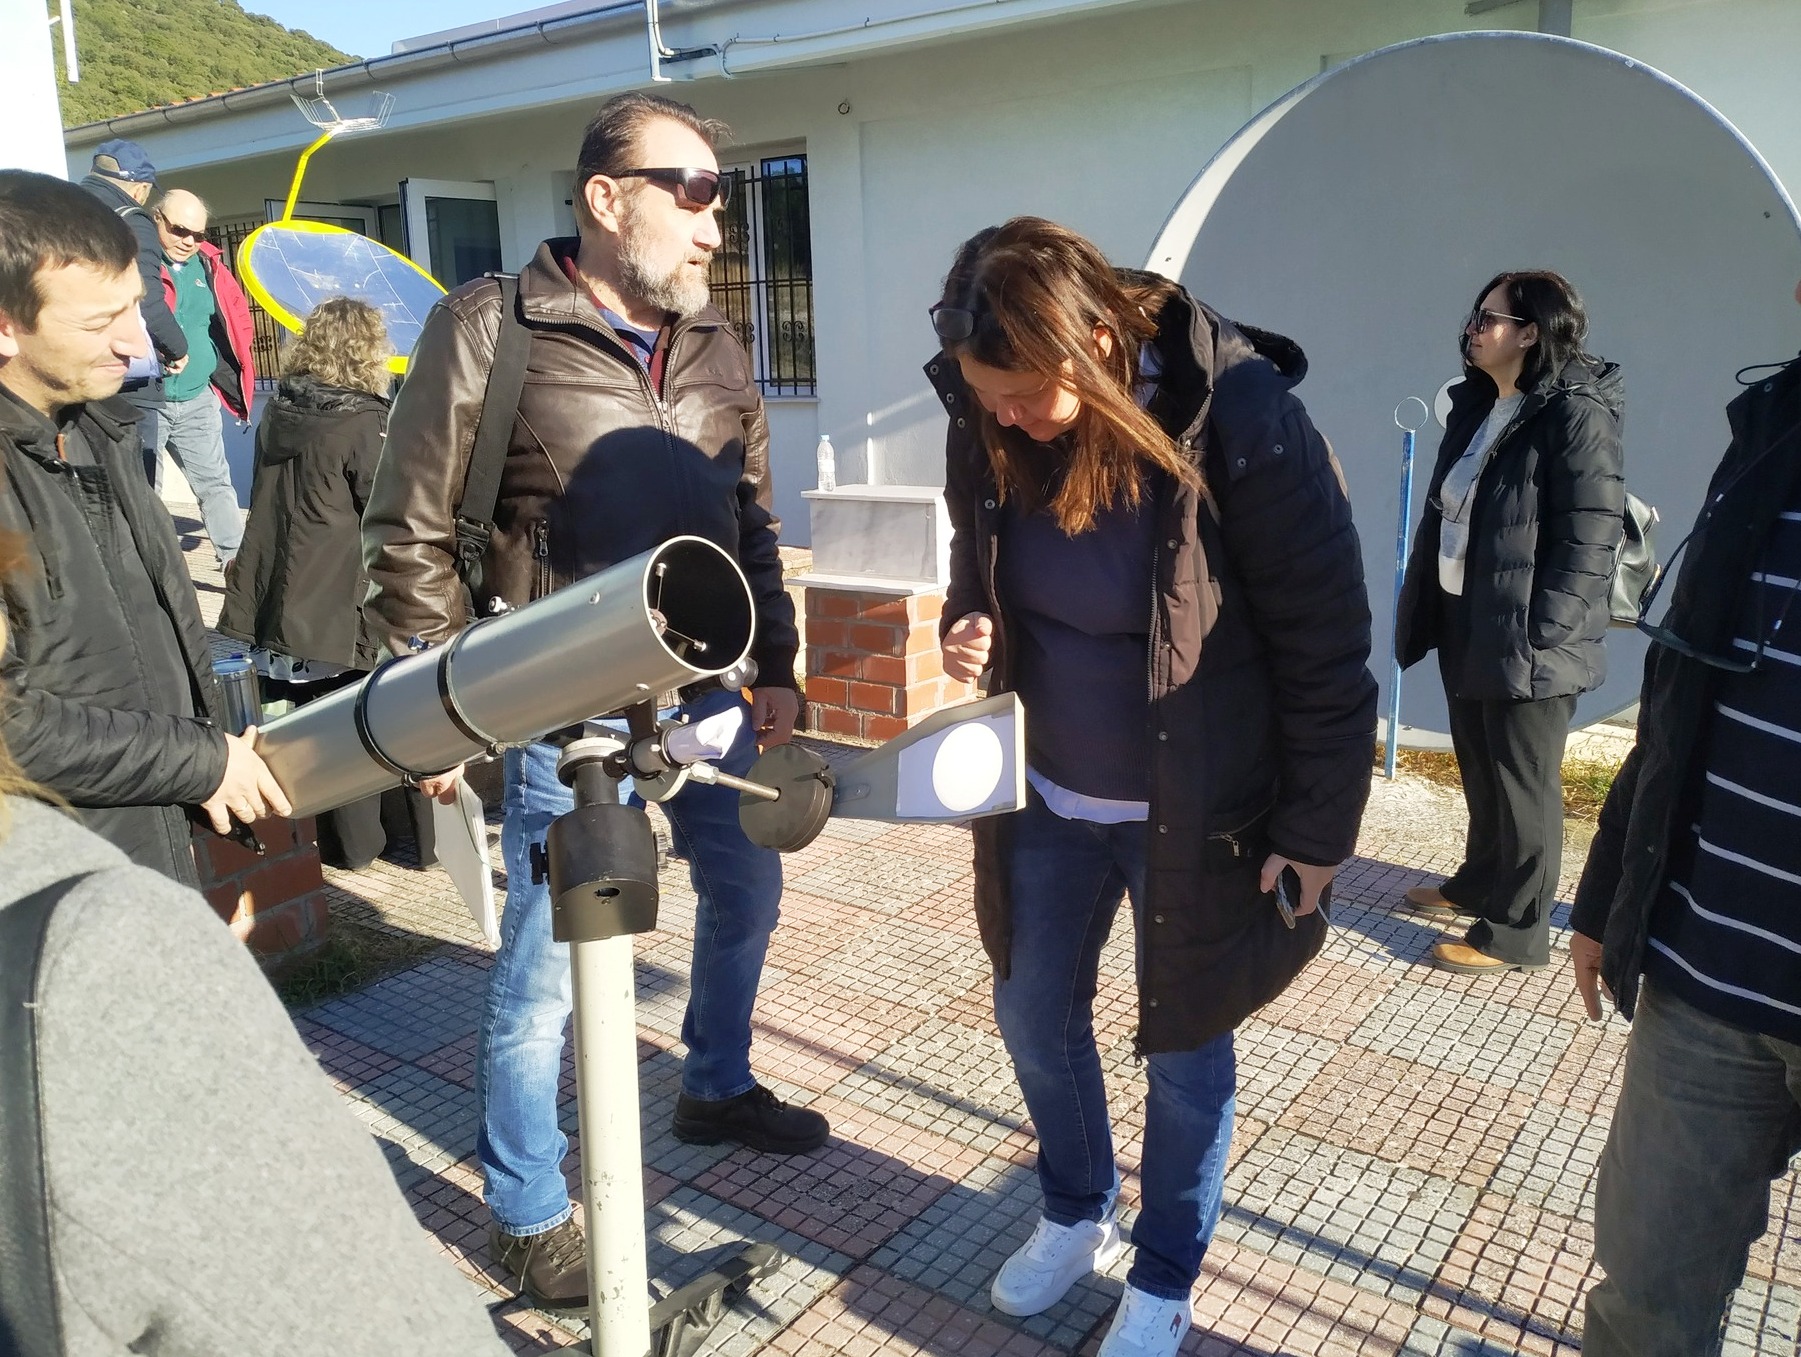 Δράμα: Η κατασκευή ηλιακού ρολογιού ως εκπαιδευτική δράση ανοίγει τον δρόμο της γνώσης στην Αστρονομία